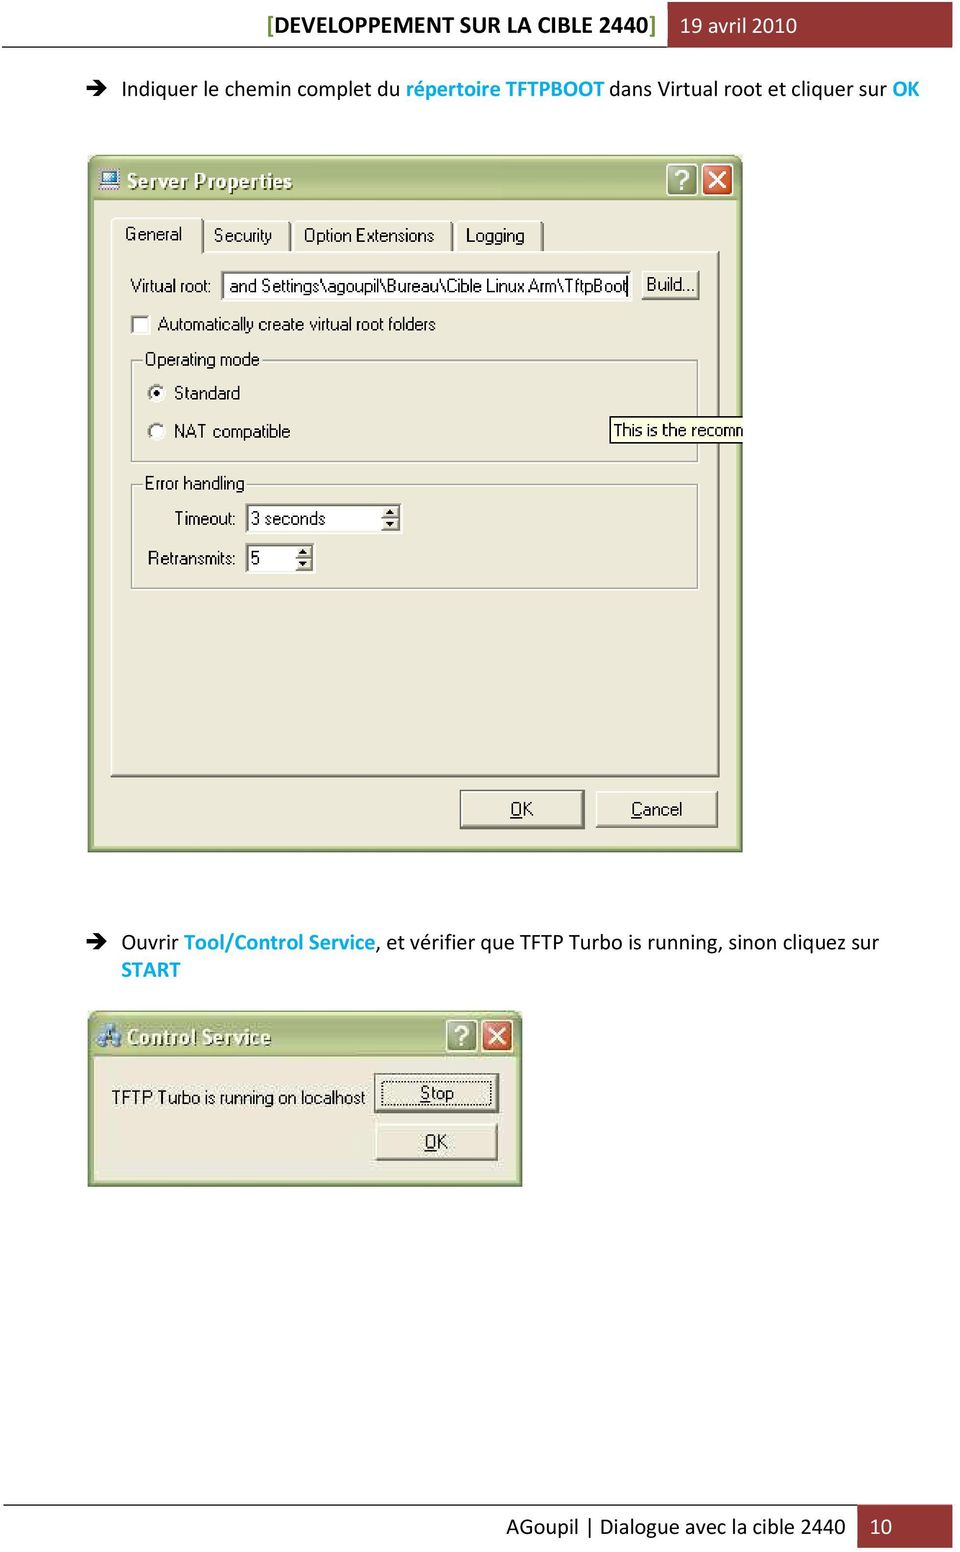 Tool/Control Service, et vérifier que TFTP Turbo is